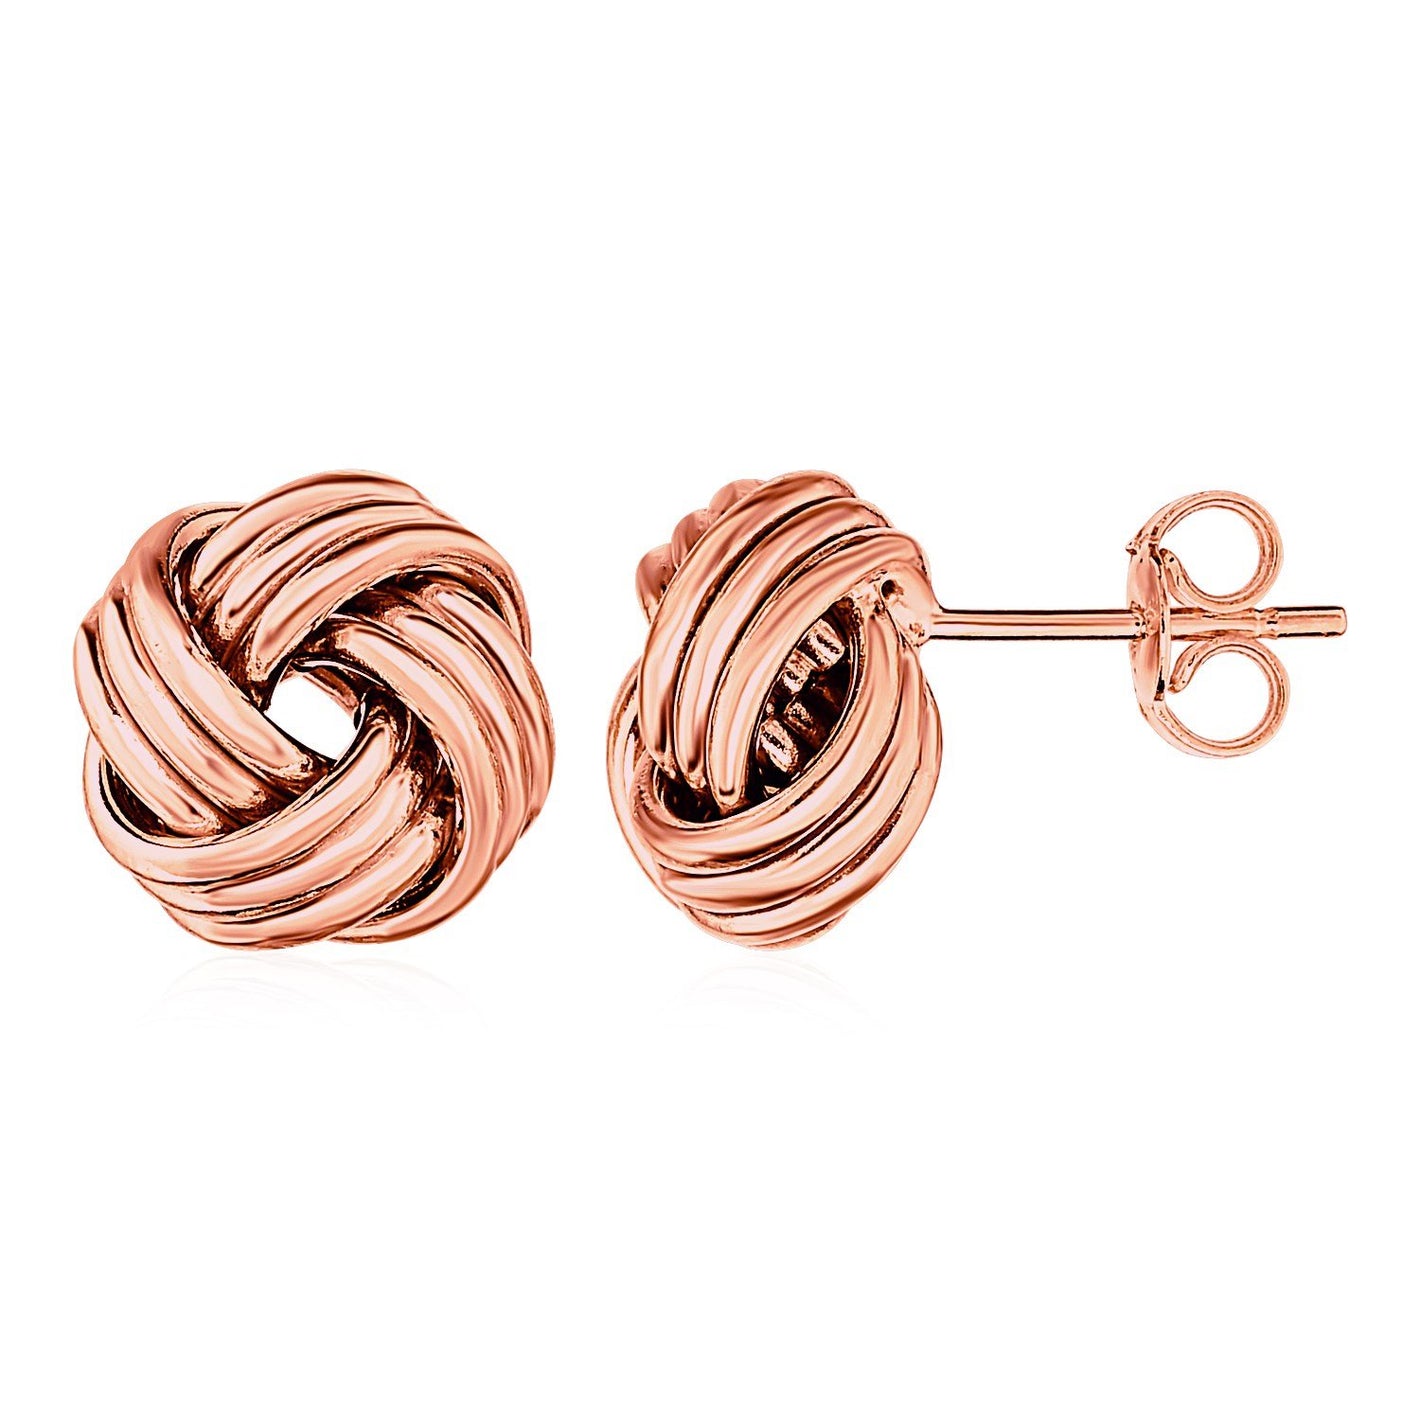 Love Knot Post Earrings in 14k Rose Gold - Drakoi Marketplace